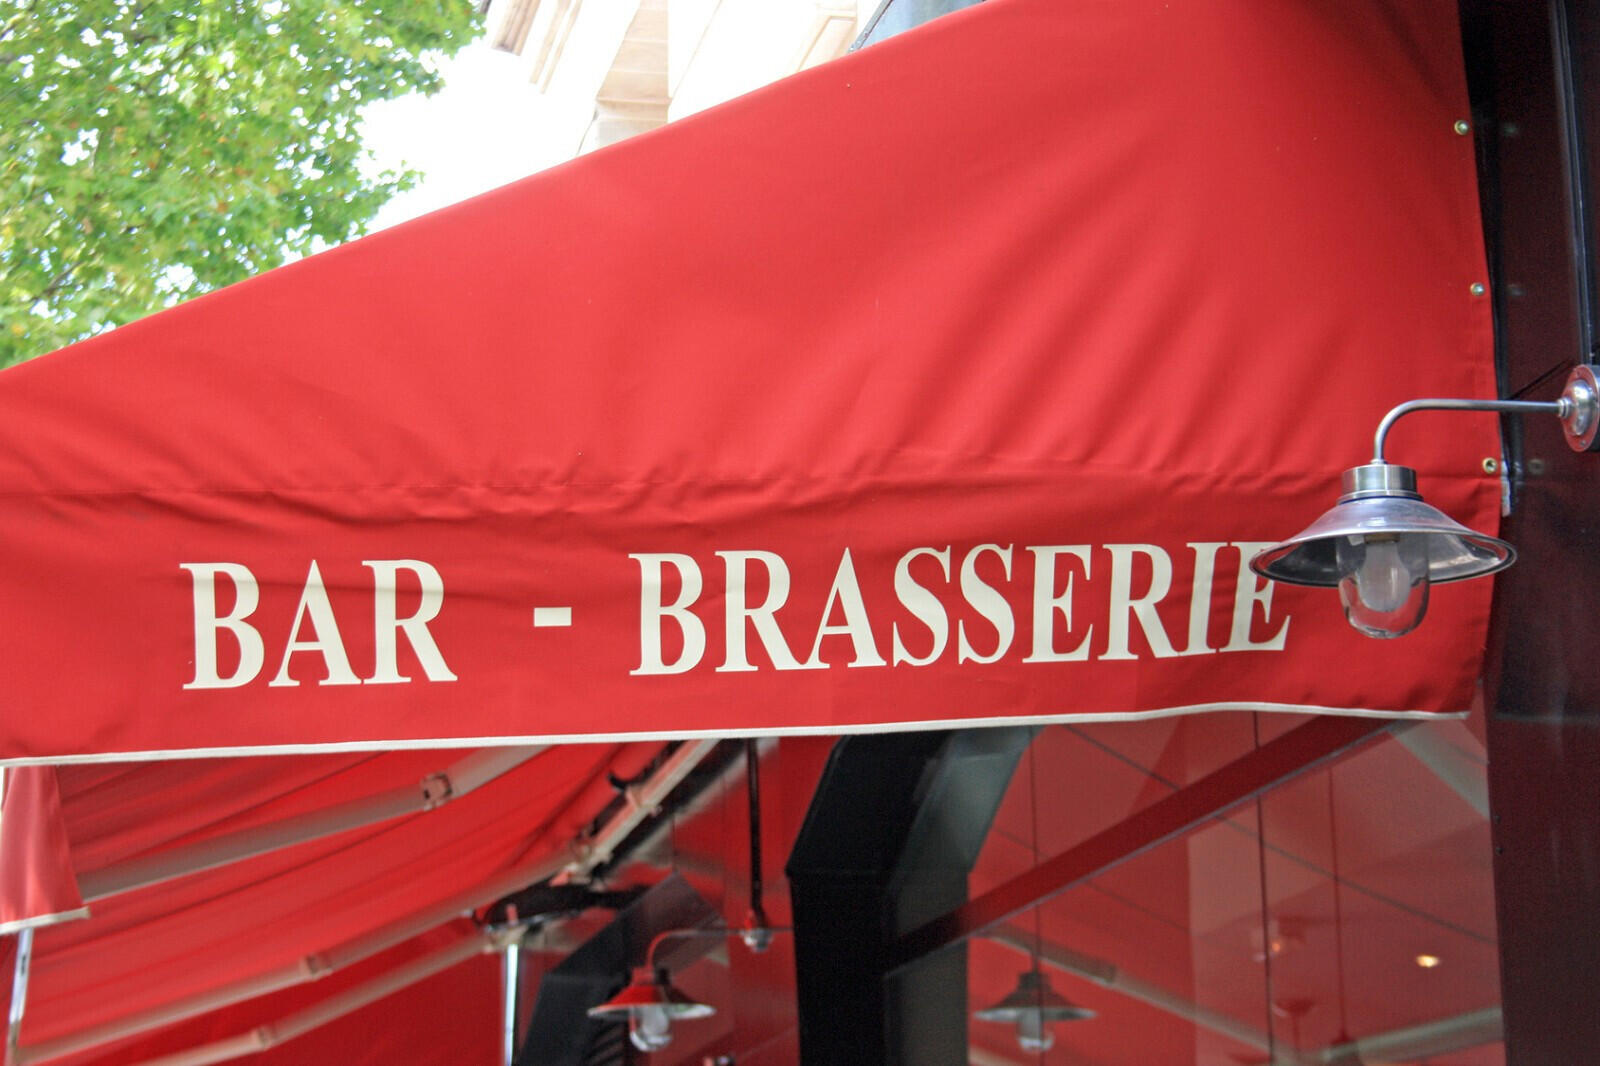 Vente magnifique brasserie dans l'Ouest Parisien